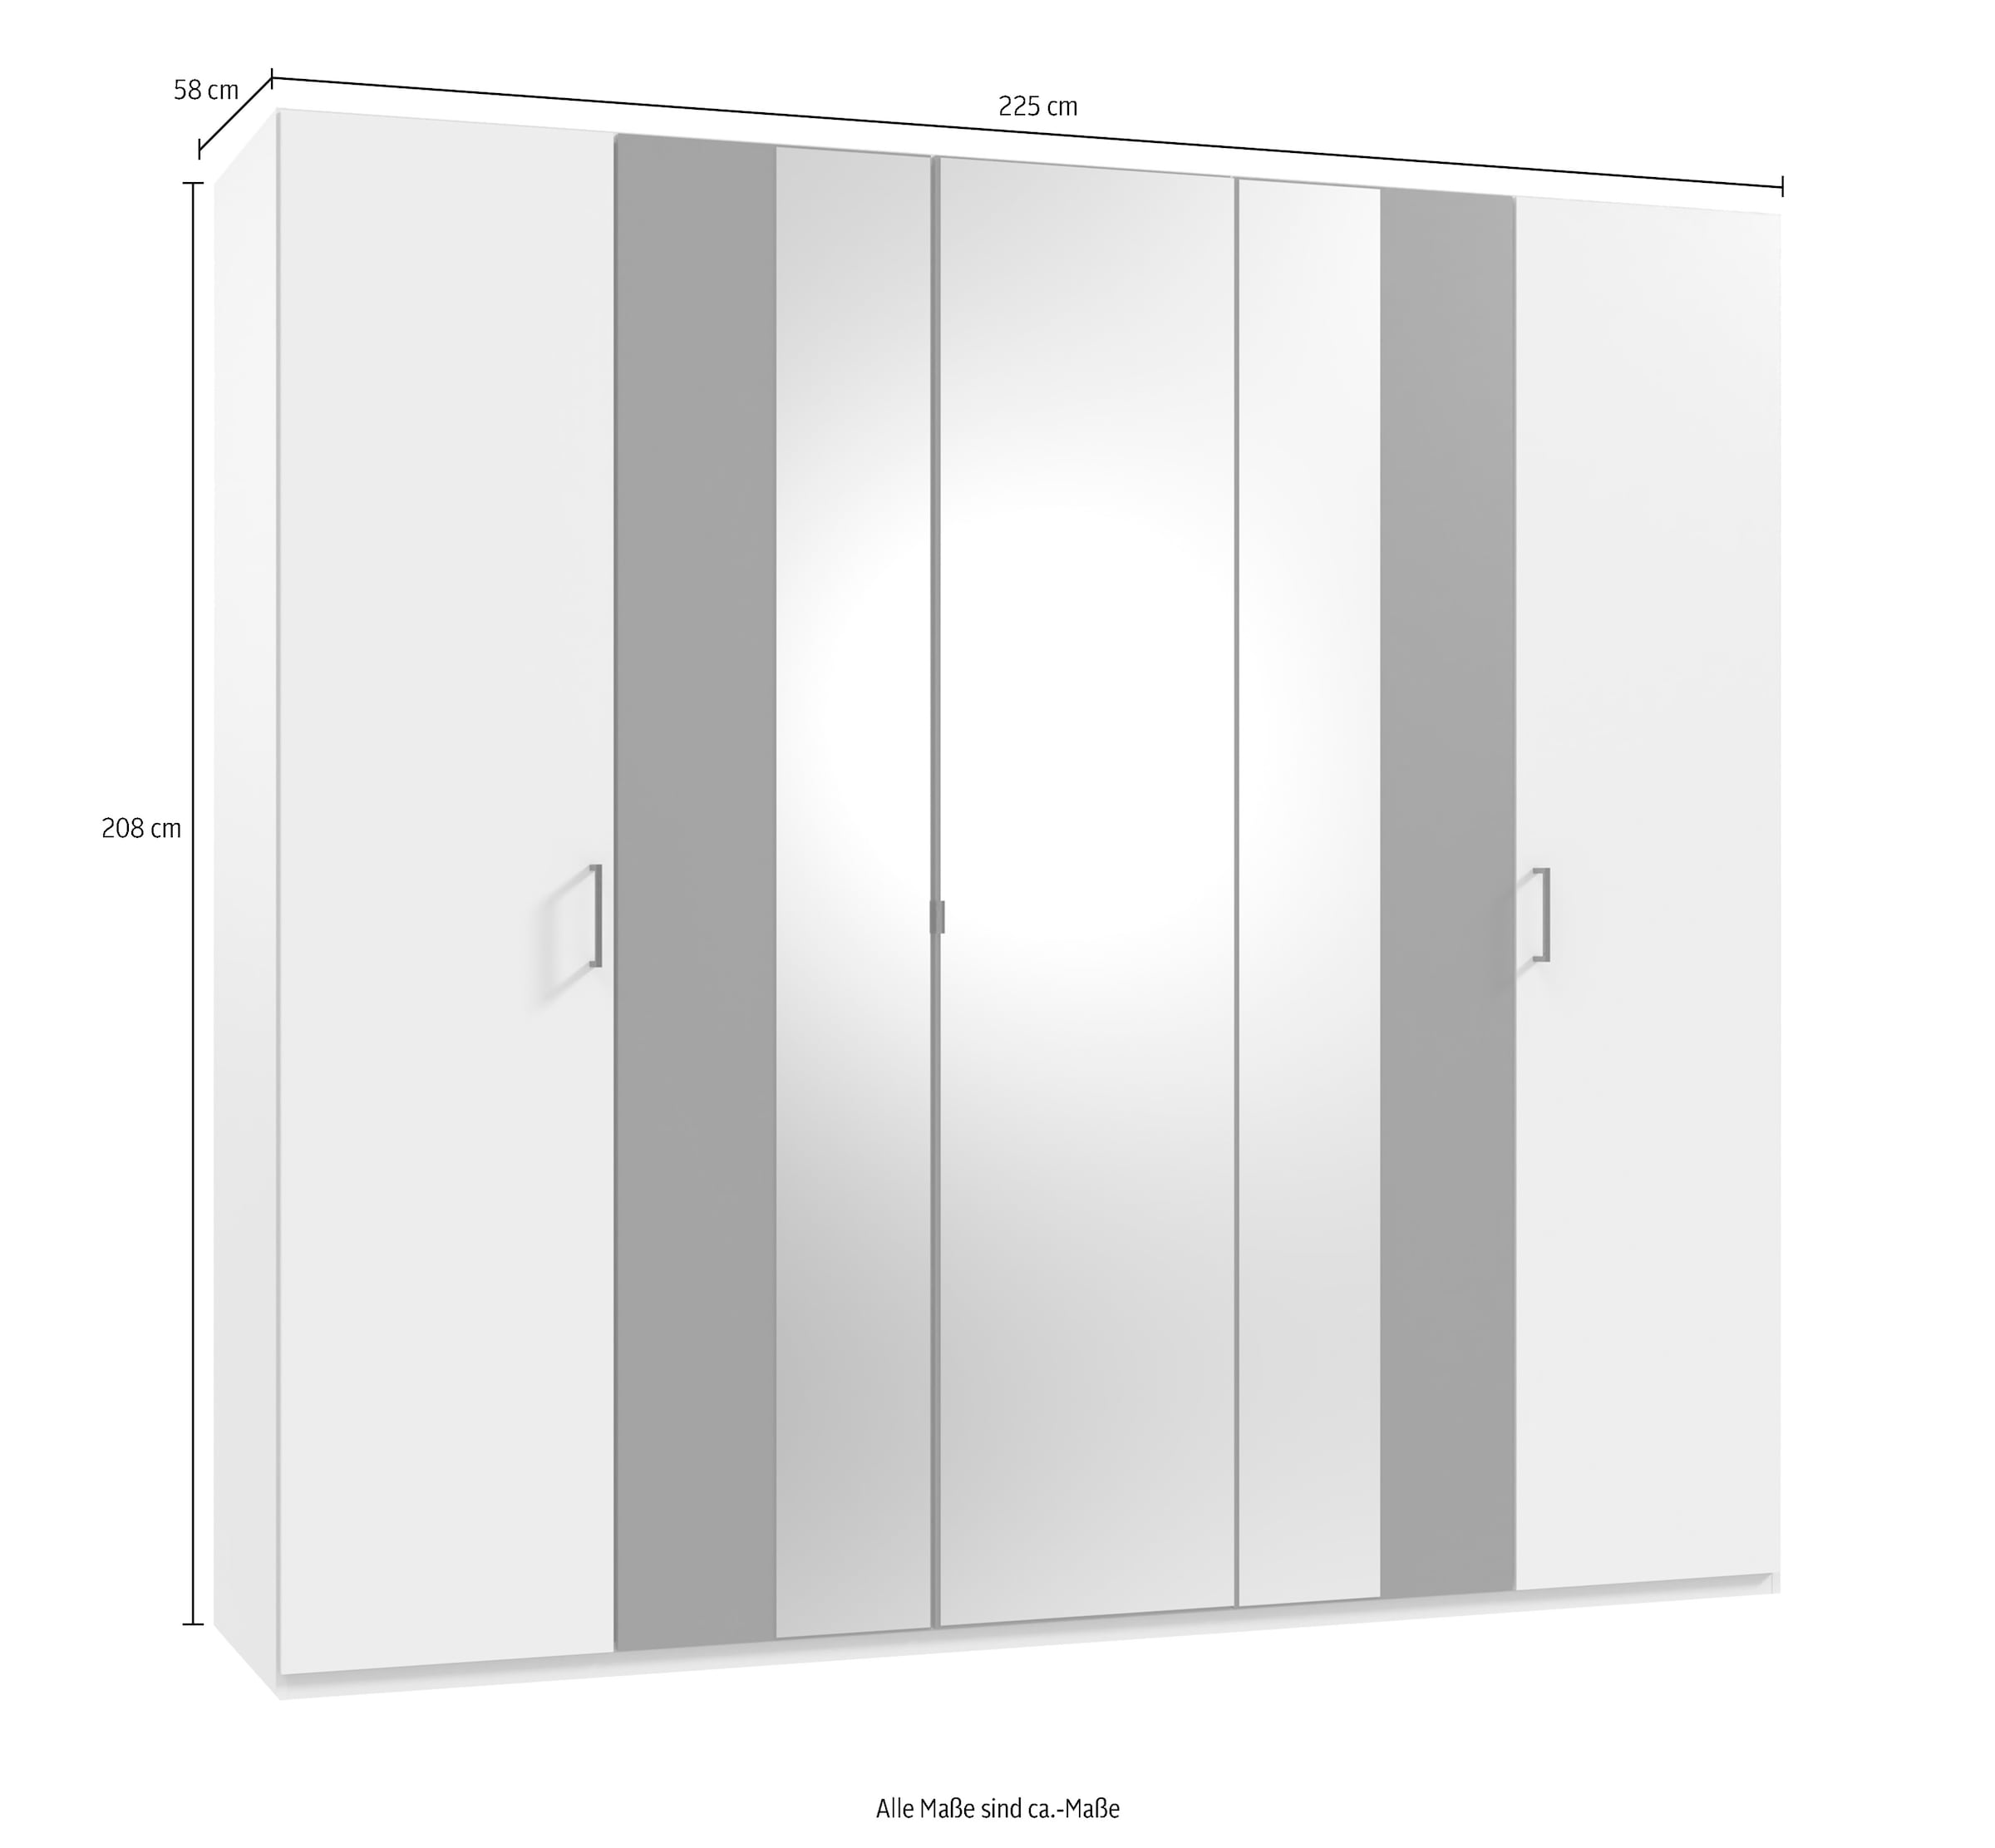 Wimex Drehtürenschrank »Kreta«, mit Spiegeltüren, 225cm breit kaufen